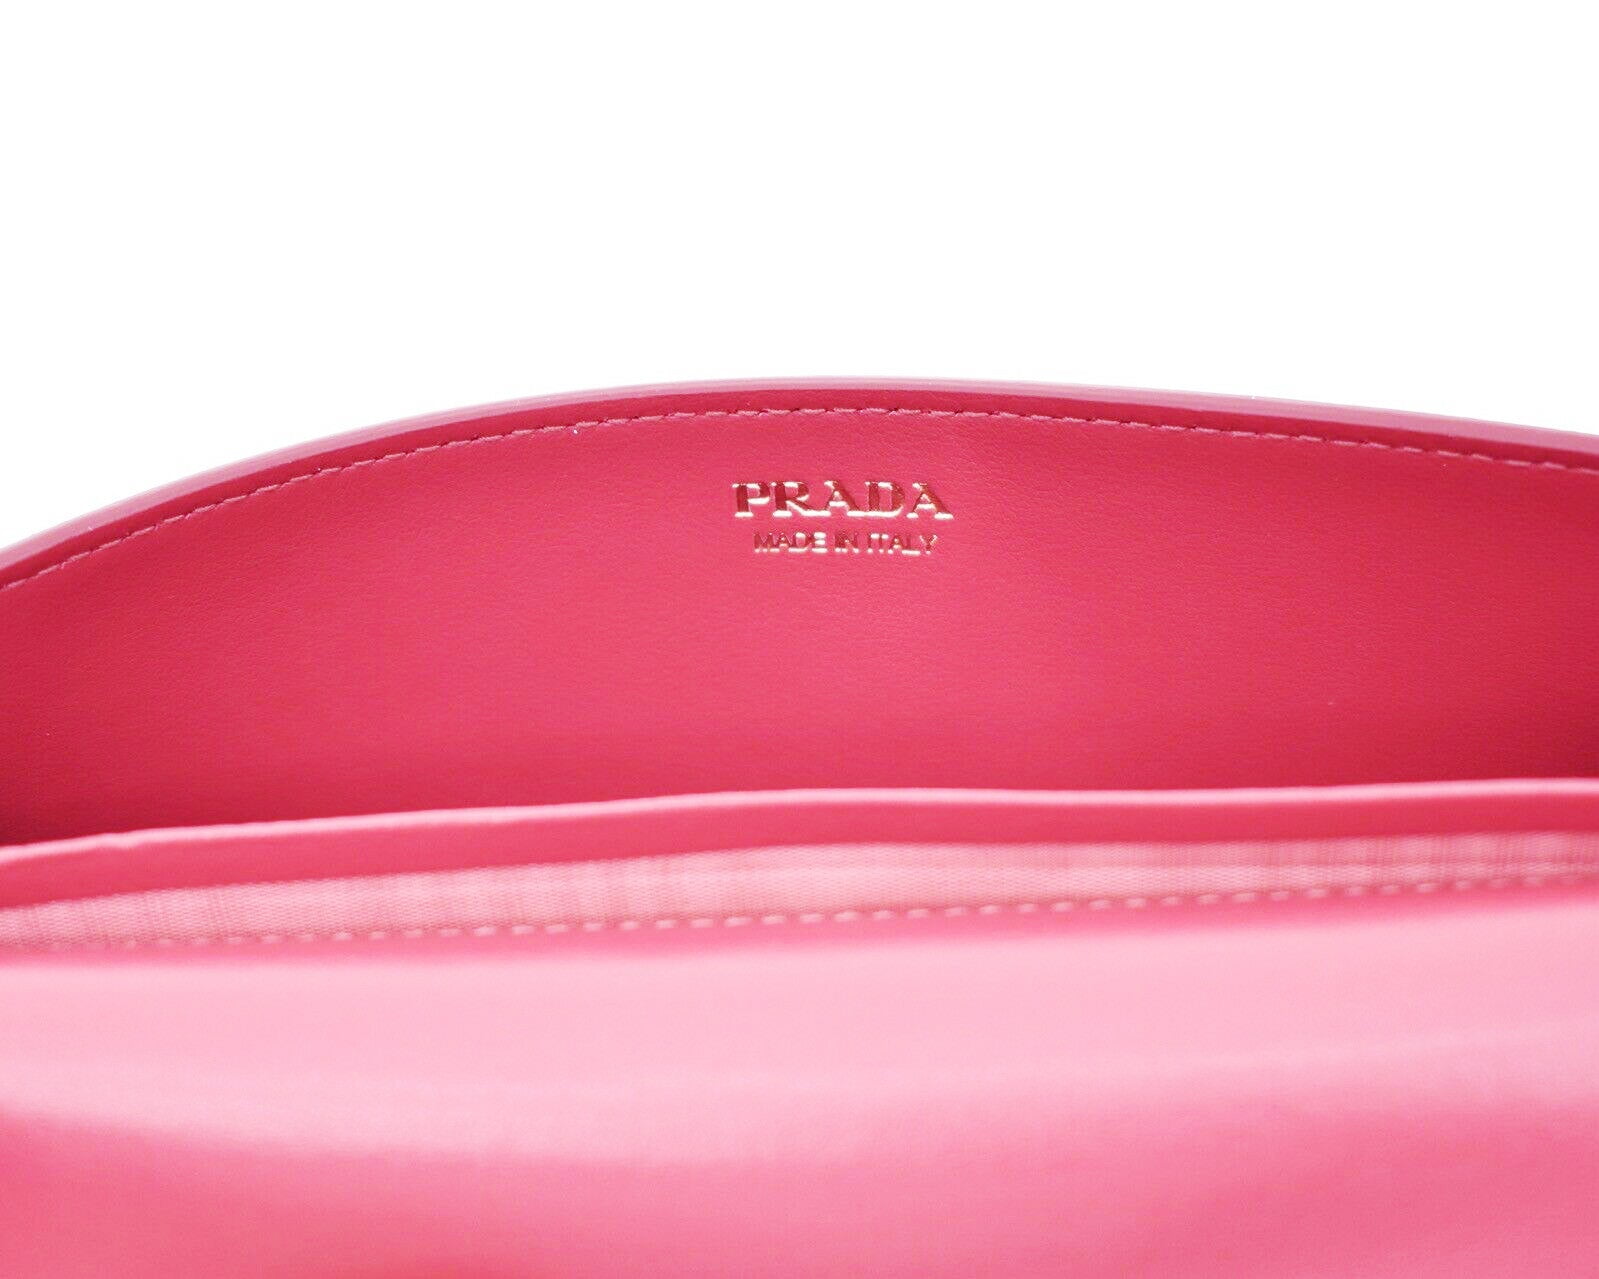 Prada Peonia Pink Vitello Phenix Leather Double Zip Crossbody